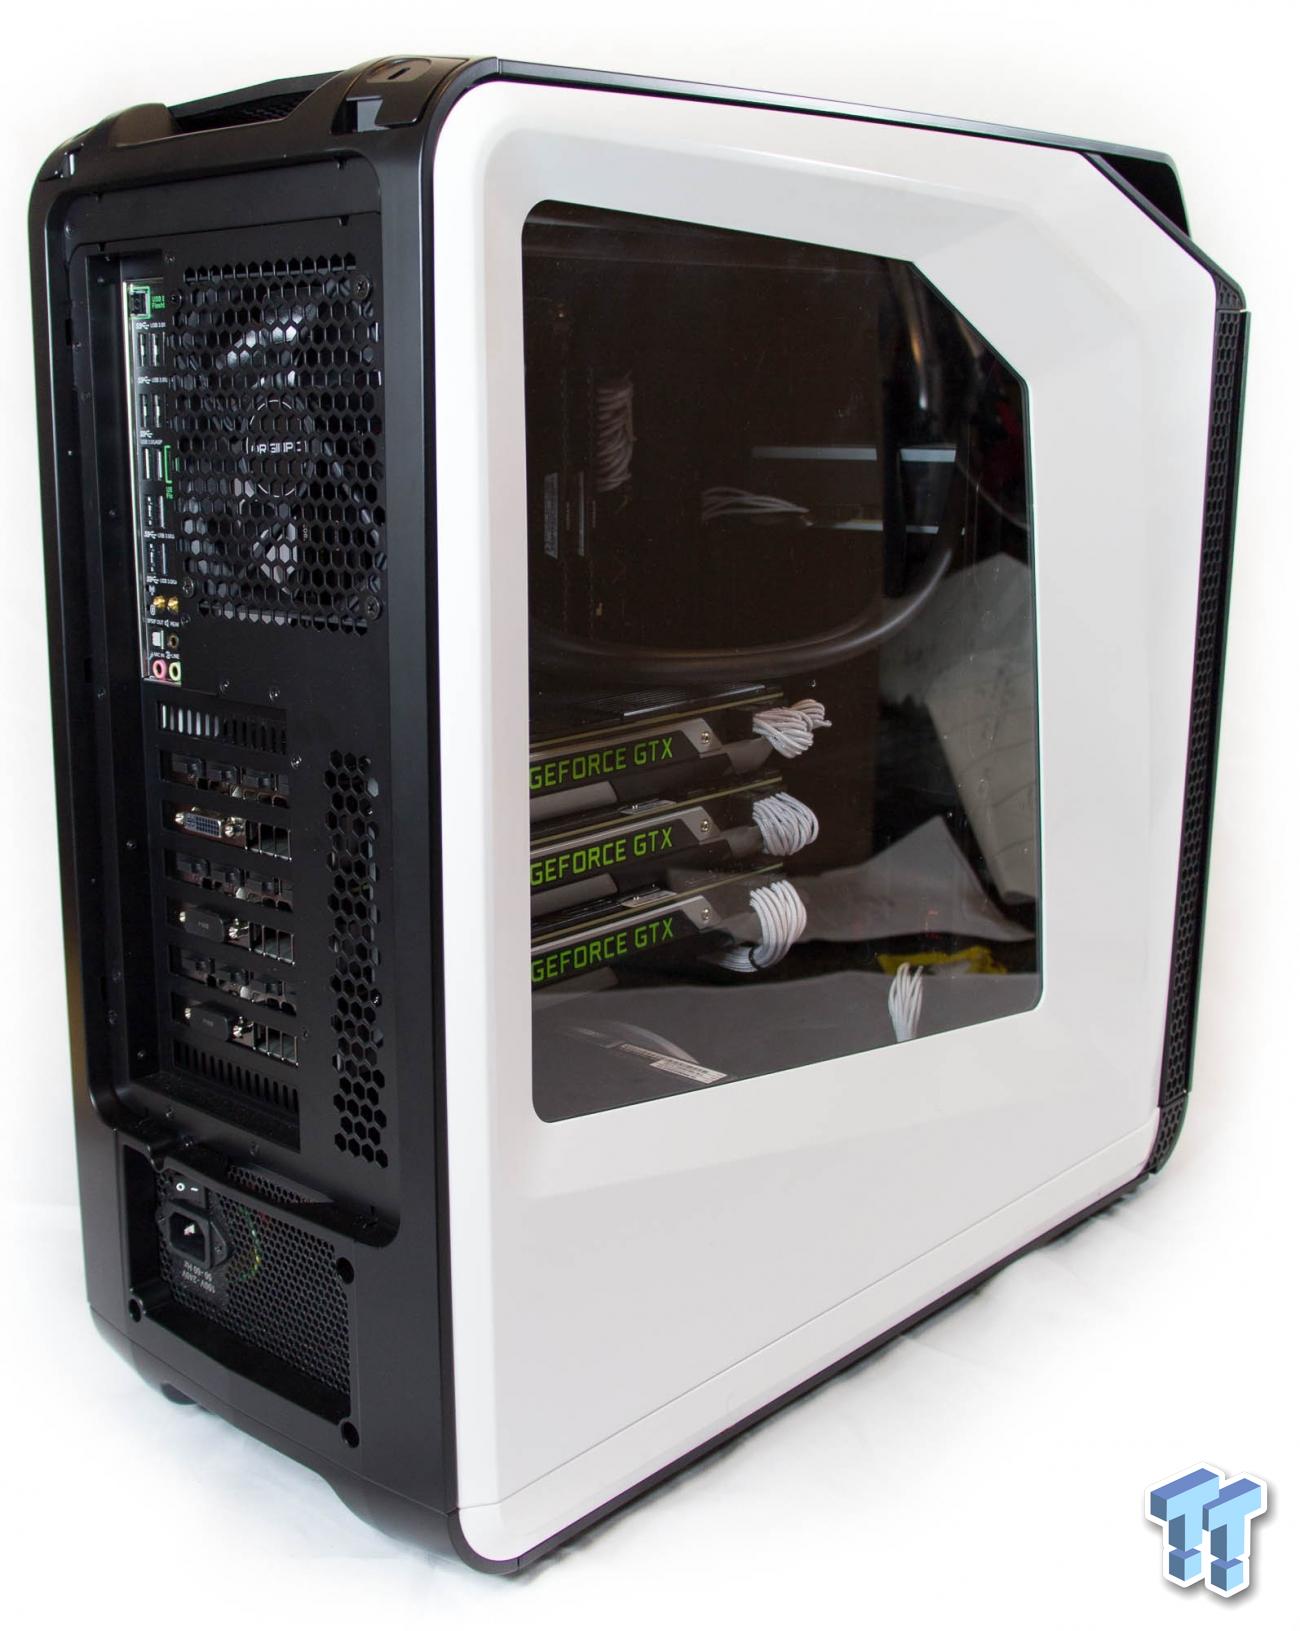 Origin PC Millennium (2014) review: A massive desktop PC built for 4K  gaming - CNET